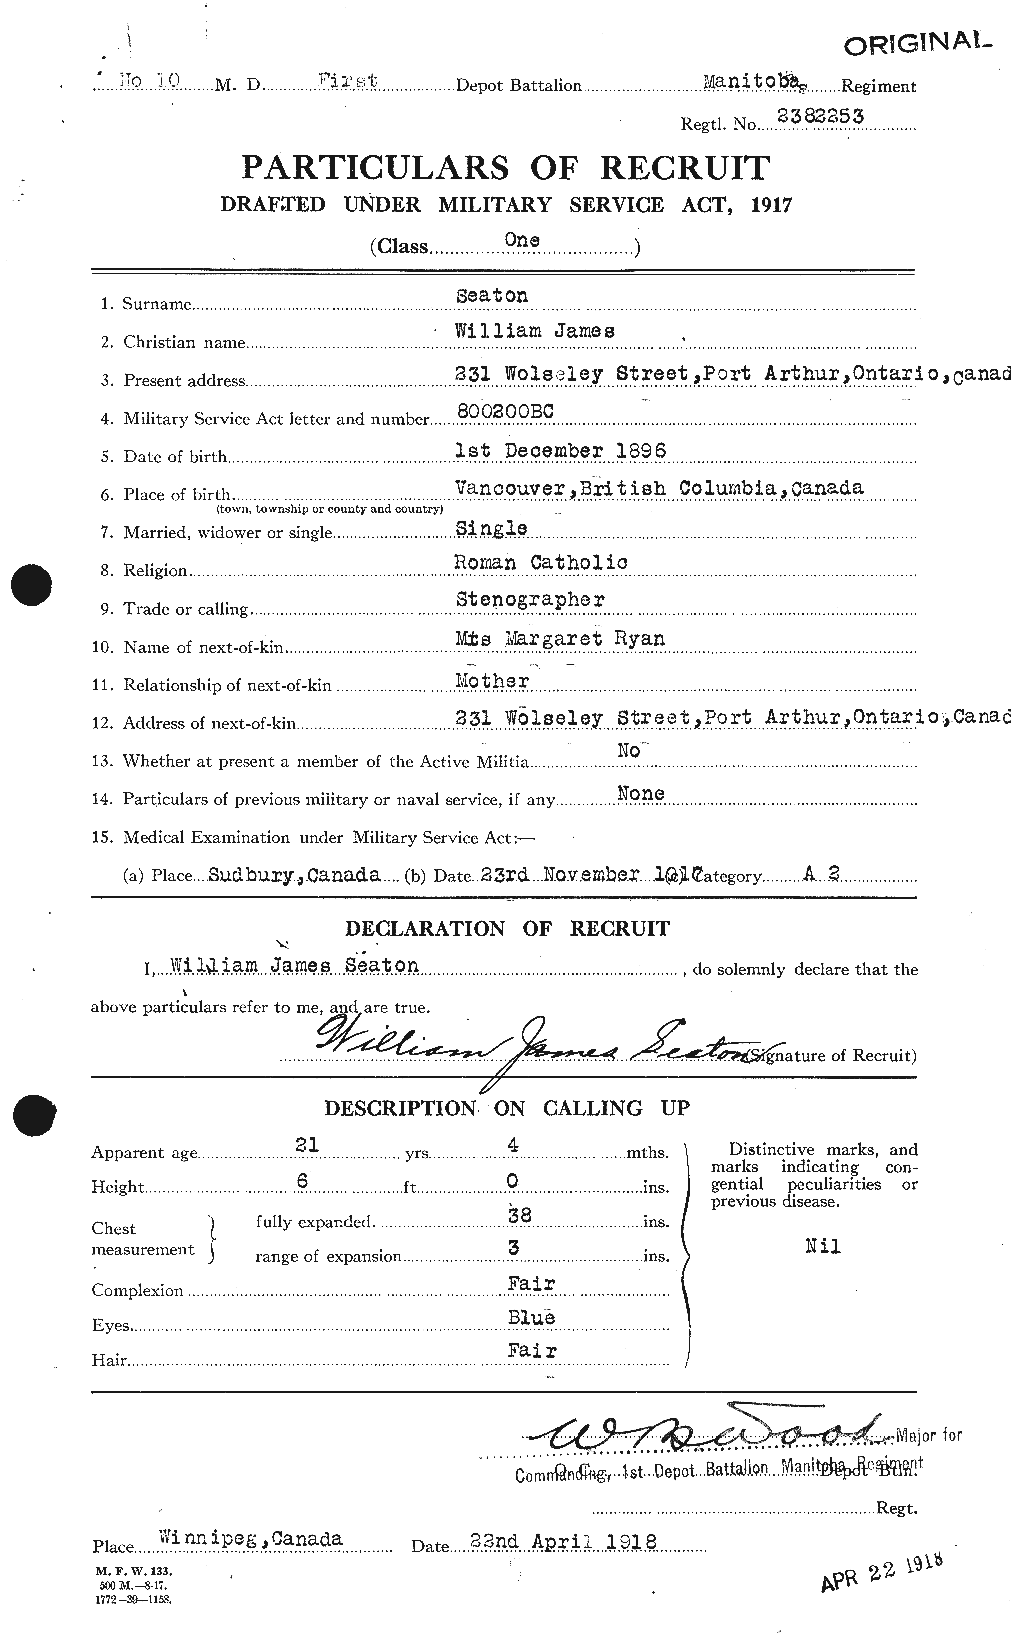 Dossiers du Personnel de la Première Guerre mondiale - CEC 085959a